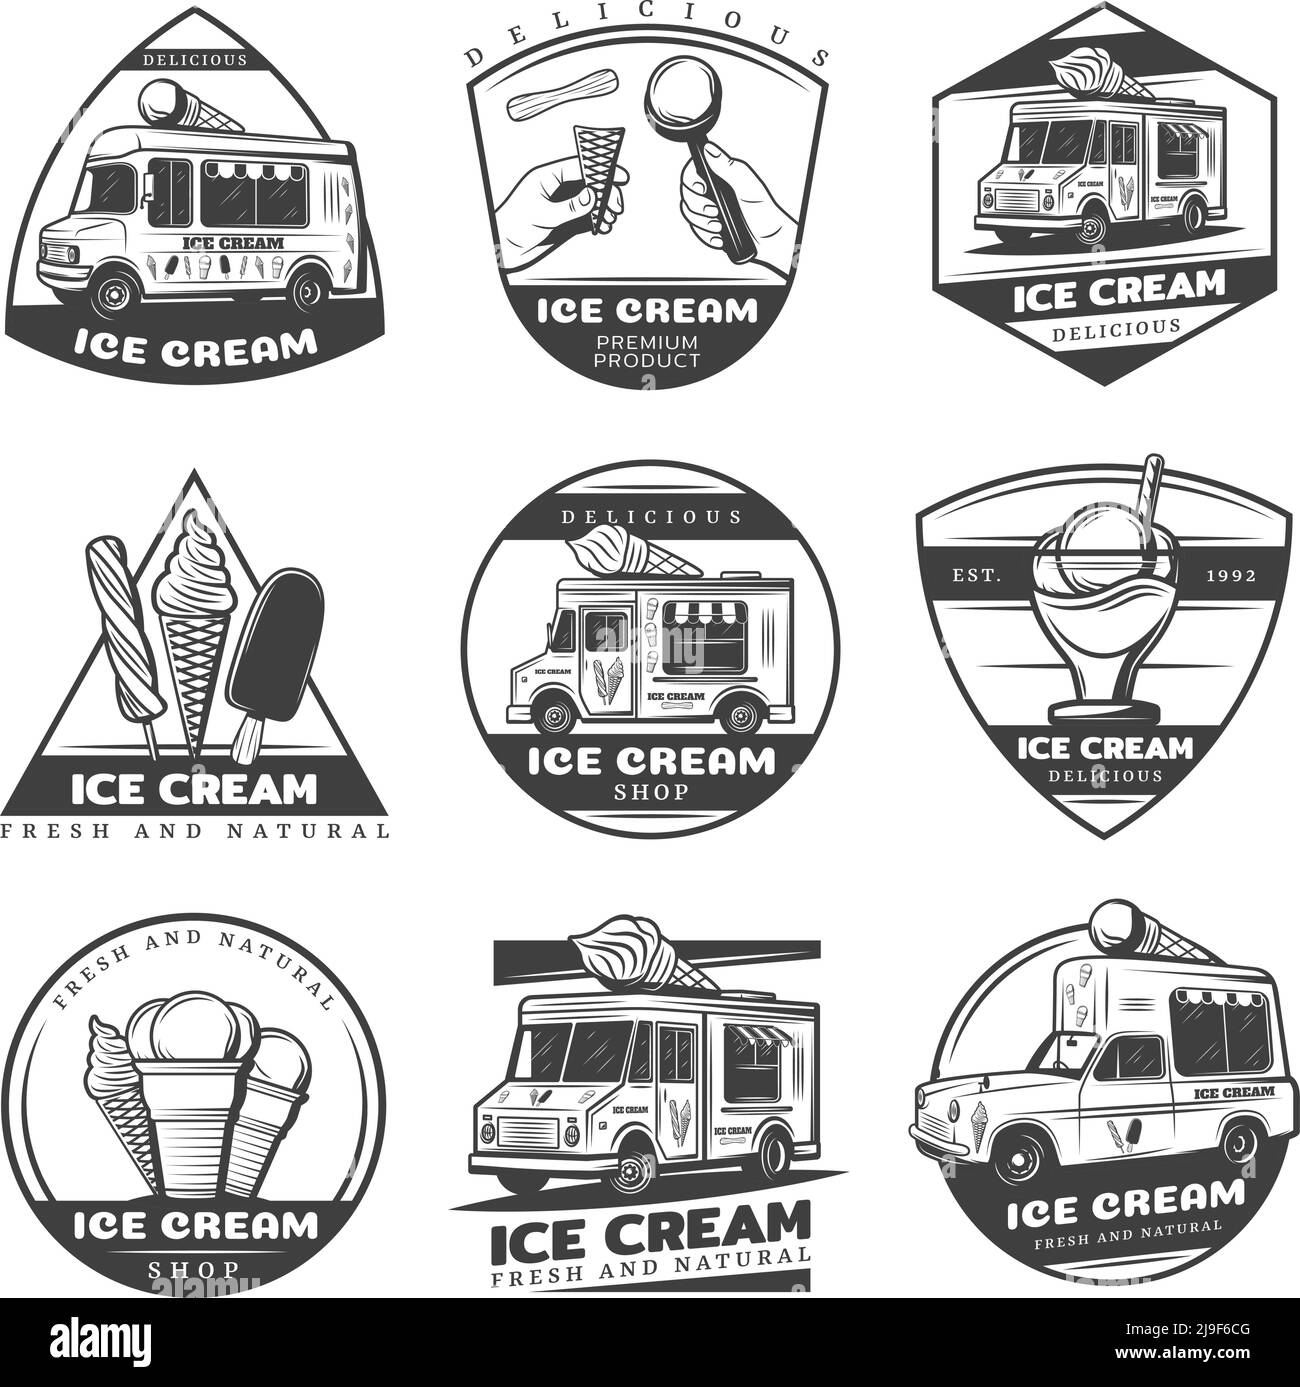 Ensemble d'étiquettes de crème glacée vintage monochromes avec inscriptions de produits sucrés illustration vectorielle isolée des camions de livraison et des fourgonnettes Illustration de Vecteur